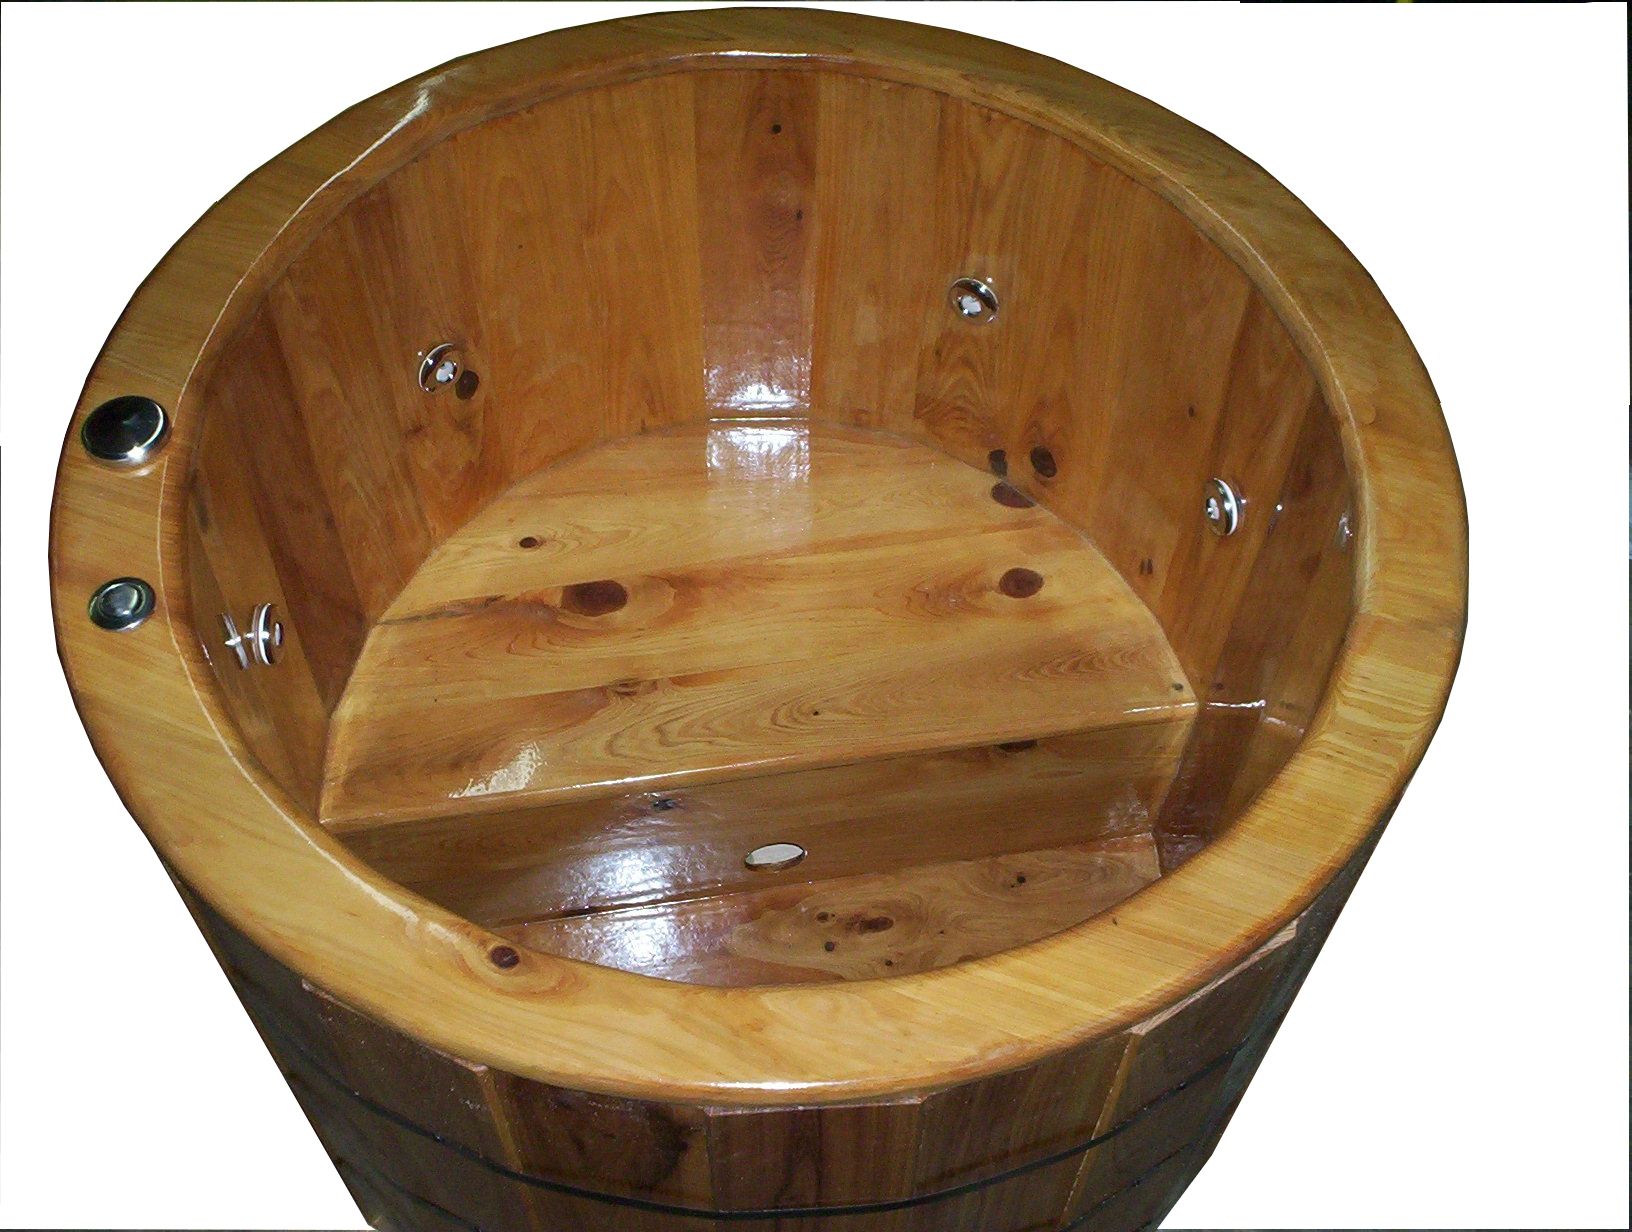 Barrel Wooden Ofuro Bathtub In Cypress, Custom Wood Bathtub